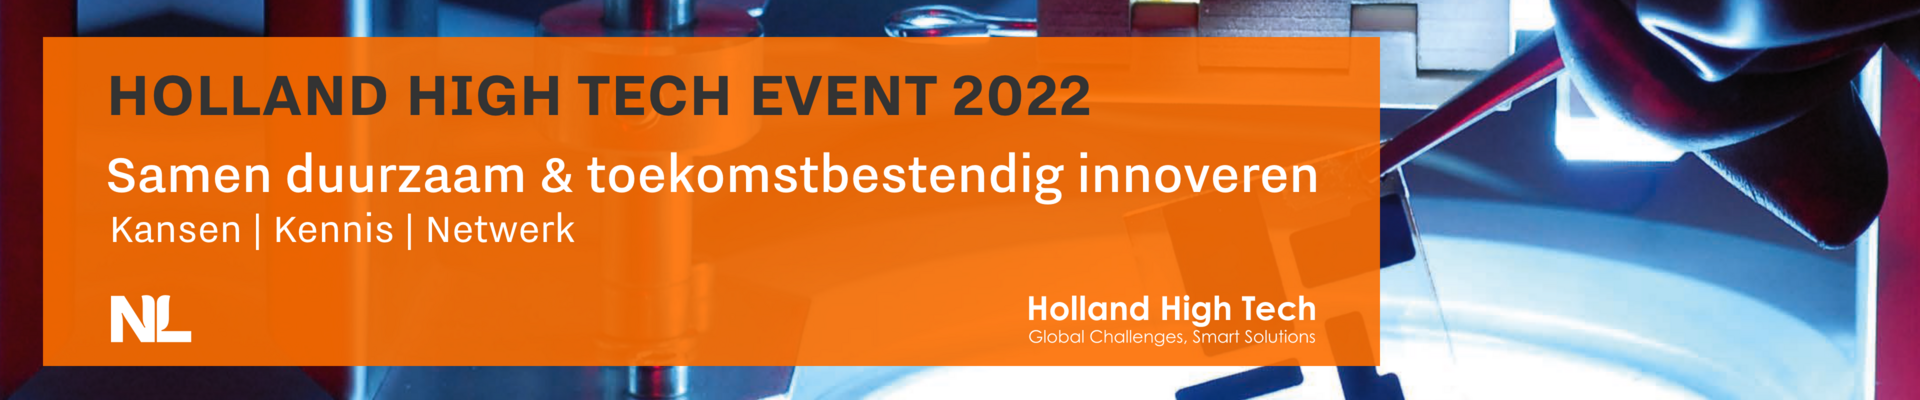 Holland High Tech Event 2022 